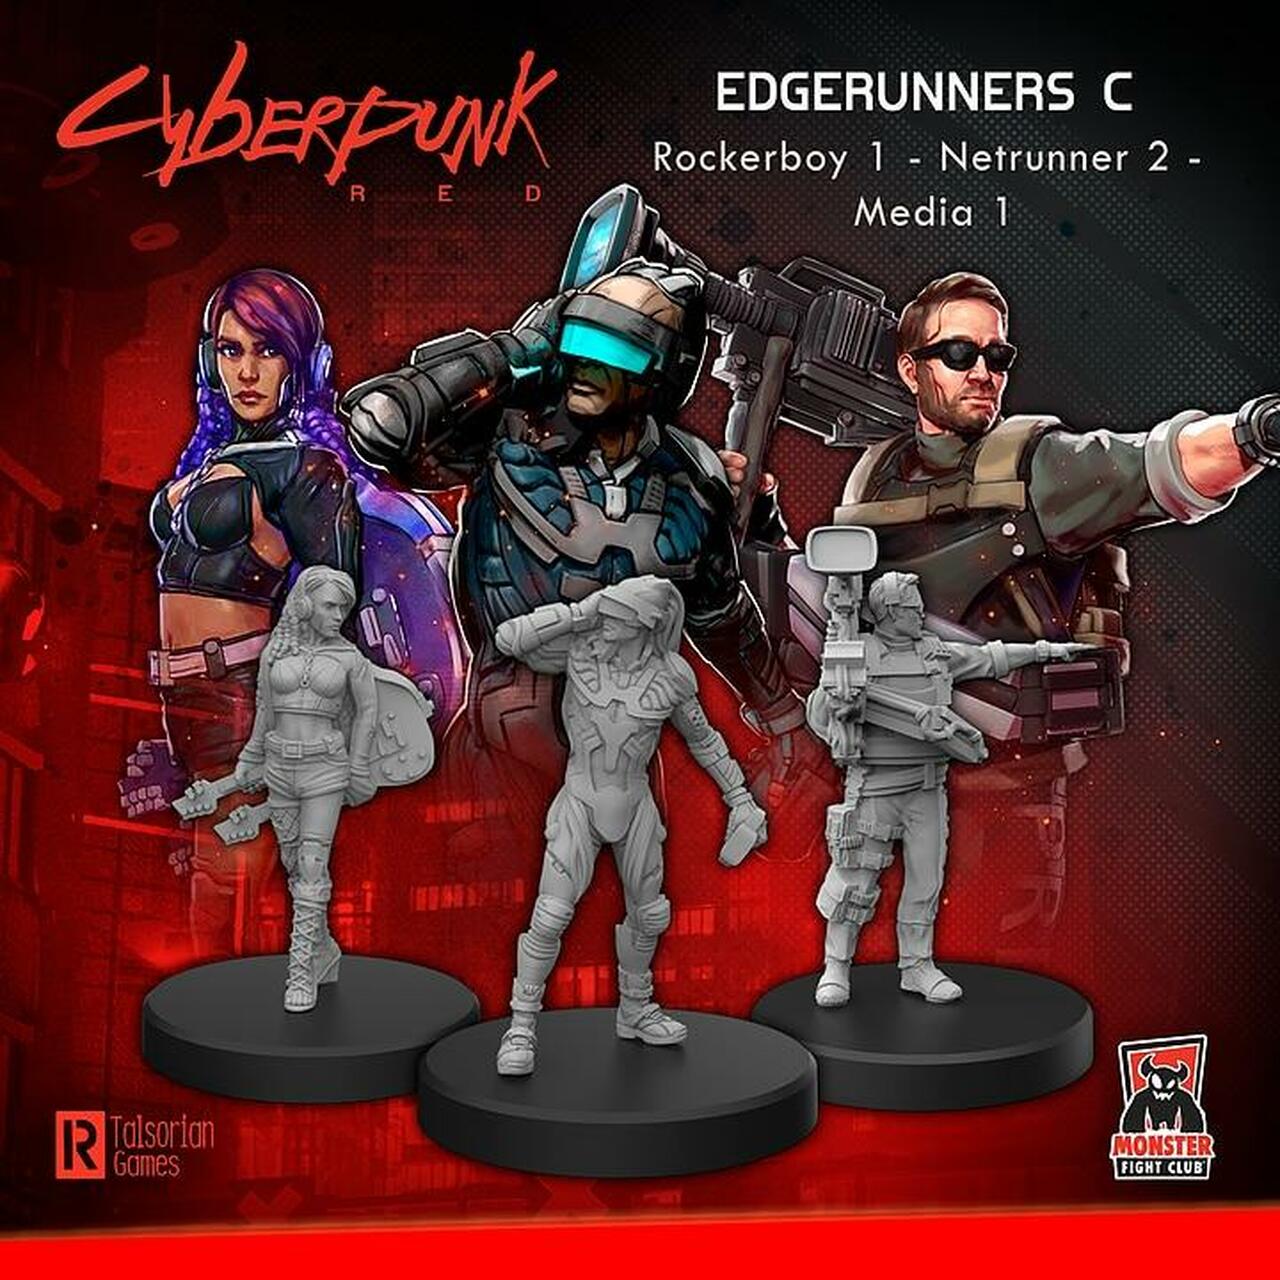 Cyberpunk Red RPG: Edgerunners C - Rocker, Netrunner, and Media